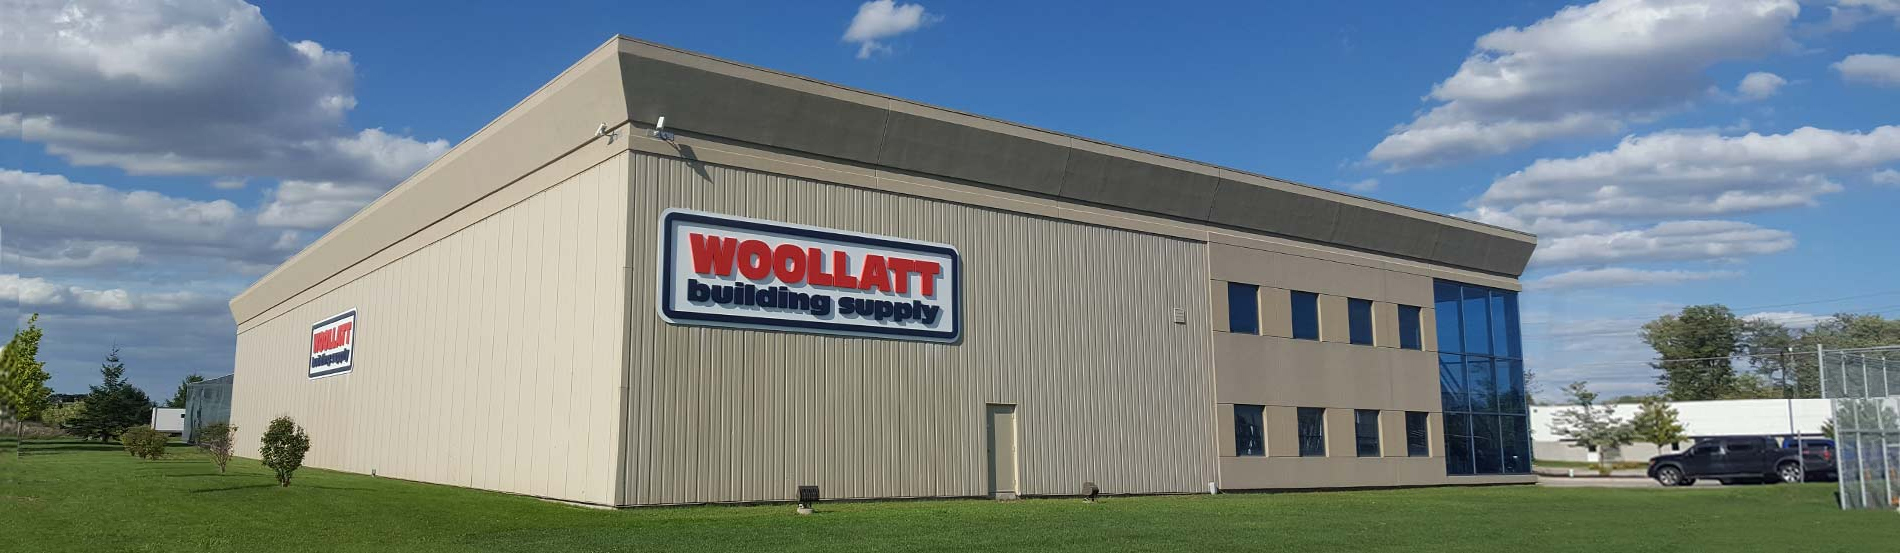 Woollatt Building Supply building